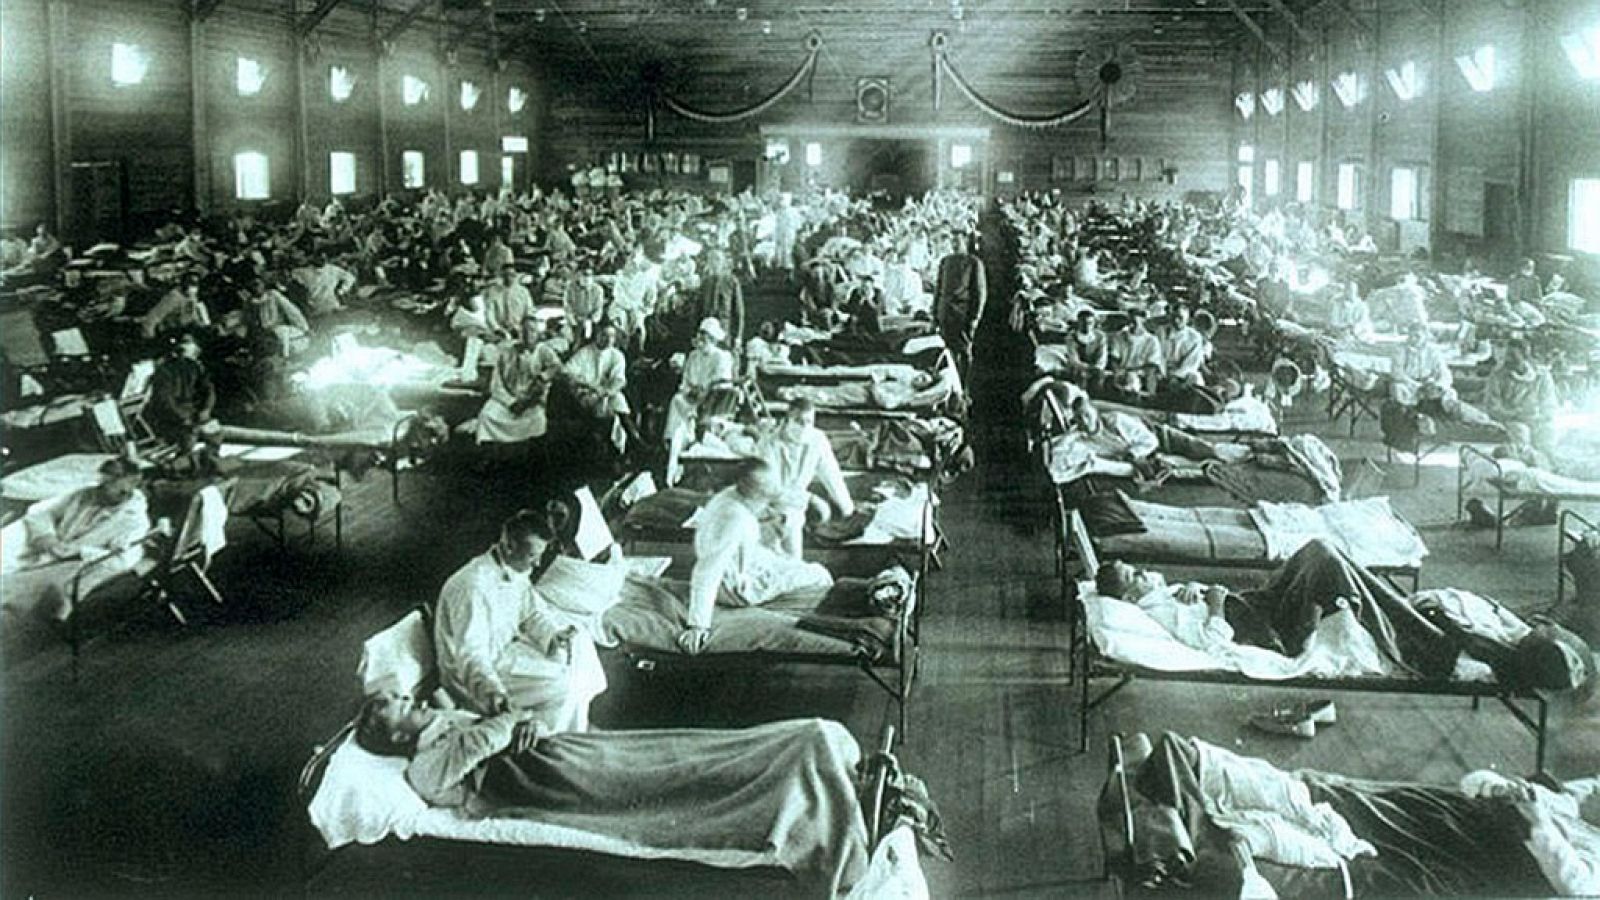 La epidemia de gripe de 1918 tuvo una segunda ola más letal y una tercera "intermedia"